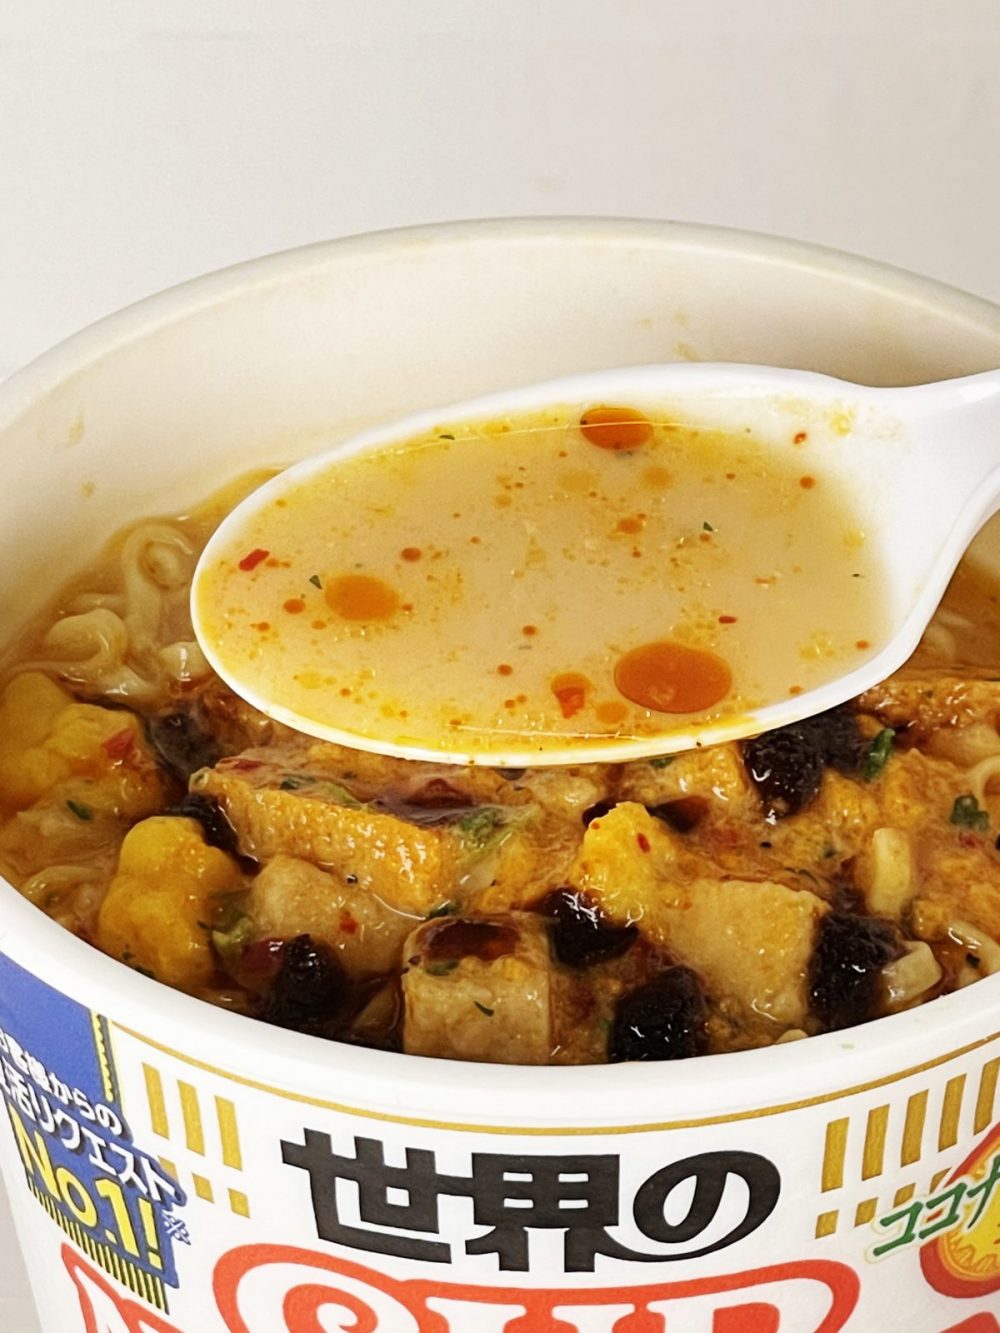 1.「カップヌードル シンガポール風ラクサ」ココナッツミルクの甘味とスパイシーな余韻ある甘辛スープは、一度食べたら忘れられない中毒性